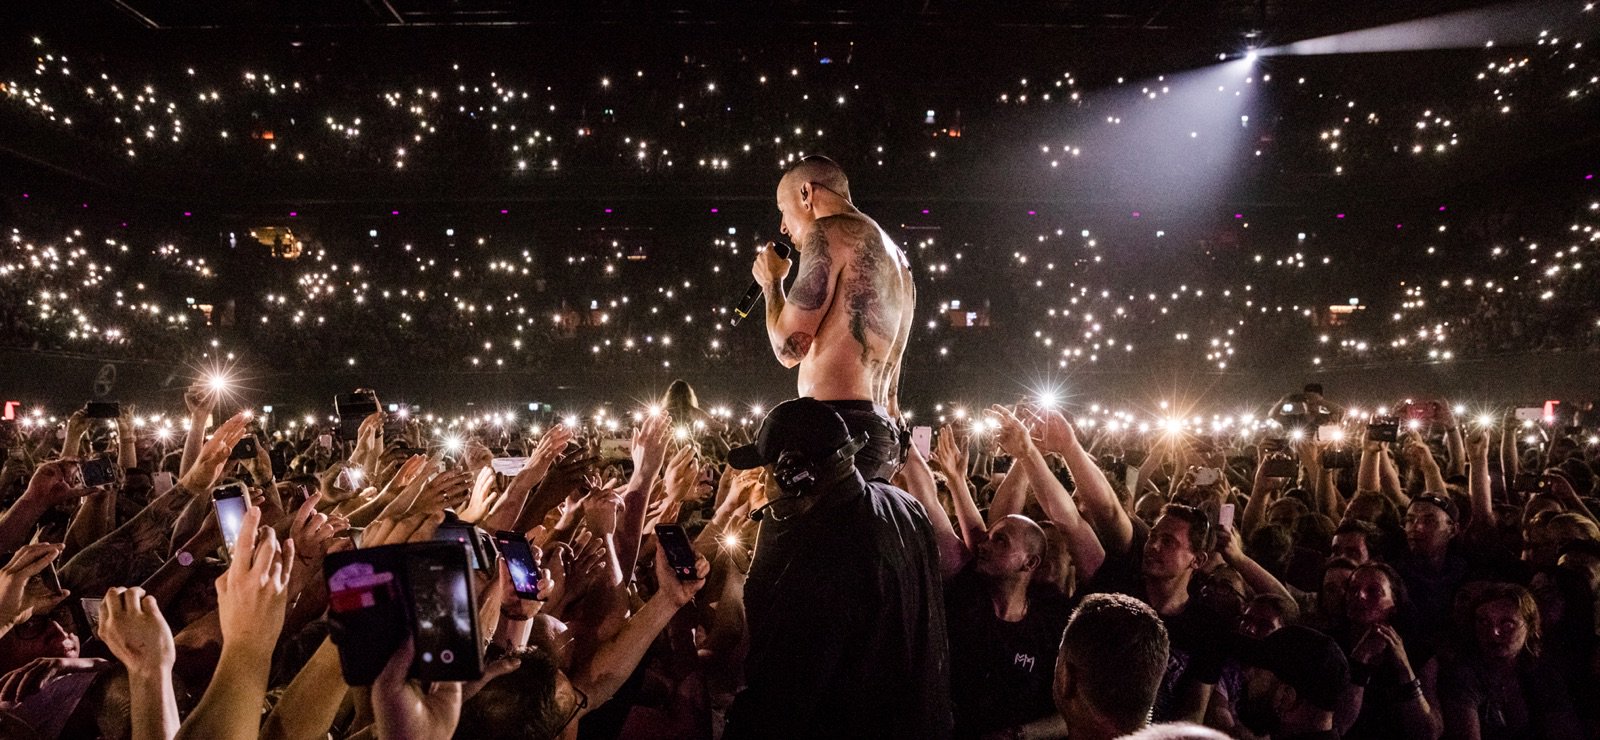 ชมมิวสิควีดิโอเพลง “One More Light” ความผูกพันจากใจ Linkin Park สู่แฟนเพลง